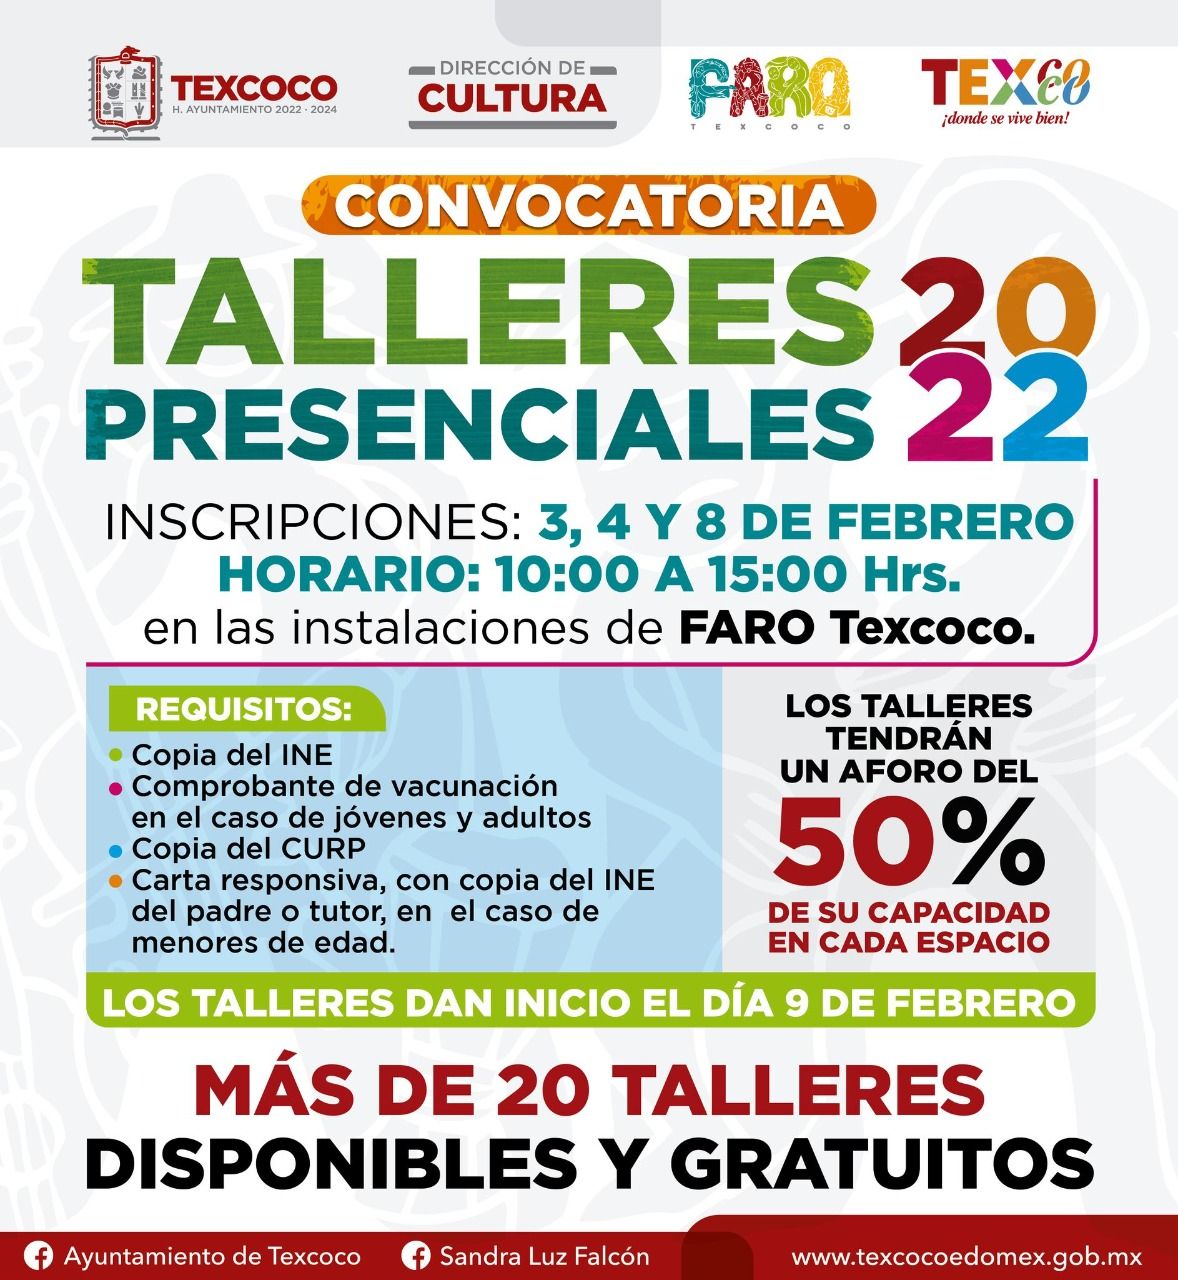 Texcoco abre el FARO inscripciones para 26 talleres presenciales 